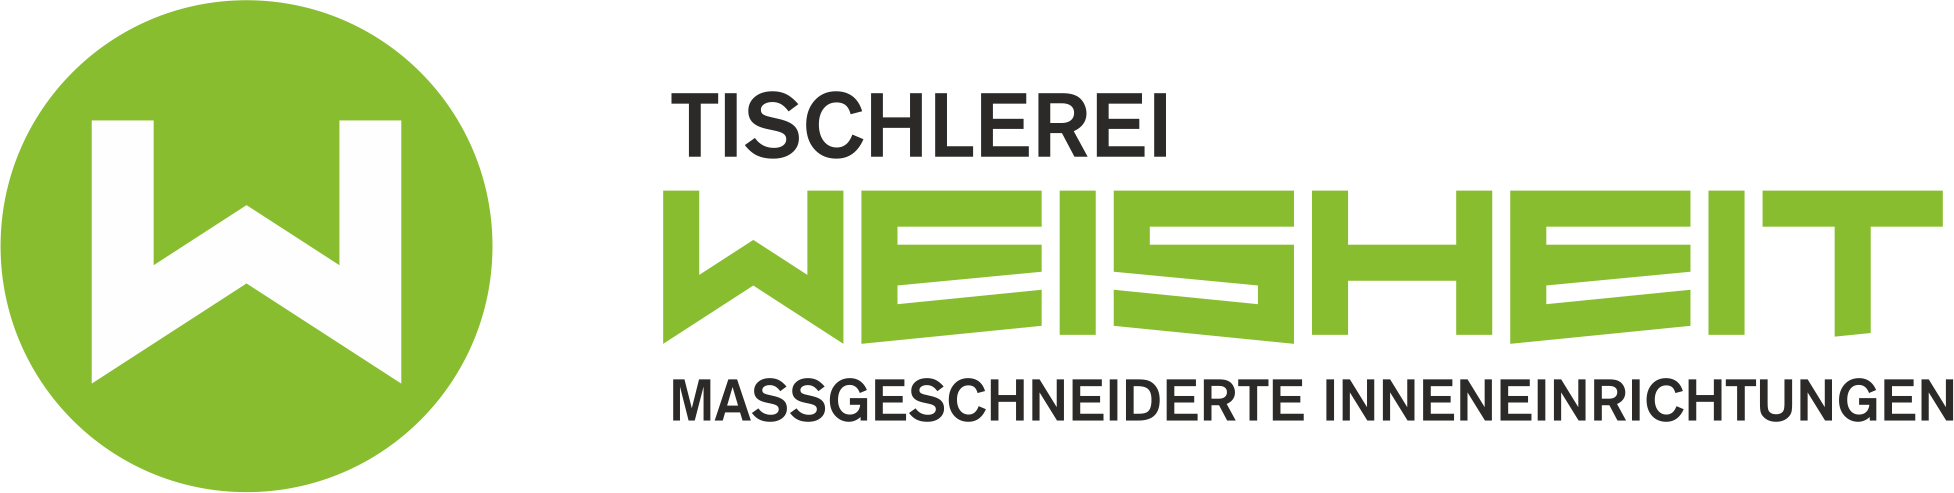 Logo Tischlerei Weisheit